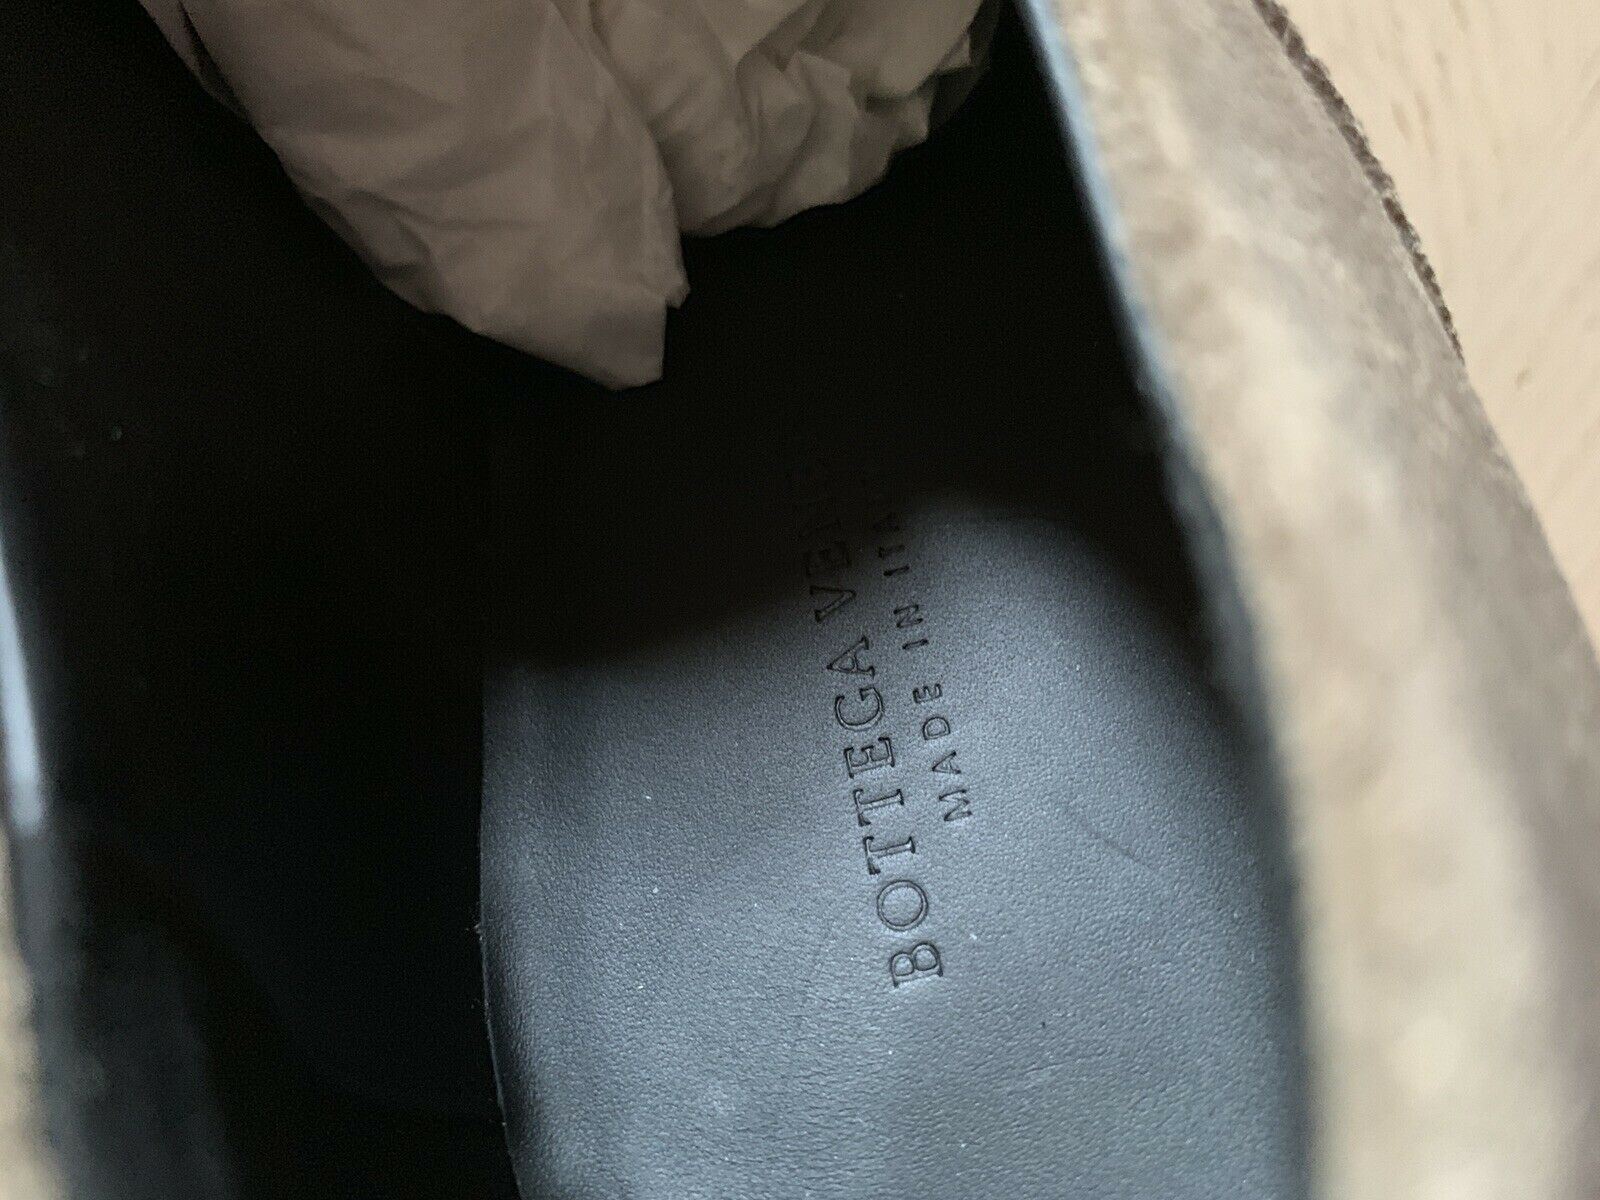 NIB $650 Мужские кожаные туфли Bottega Veneta Цвет Сталь/LT Коричневый 13 США/46 ЕС 